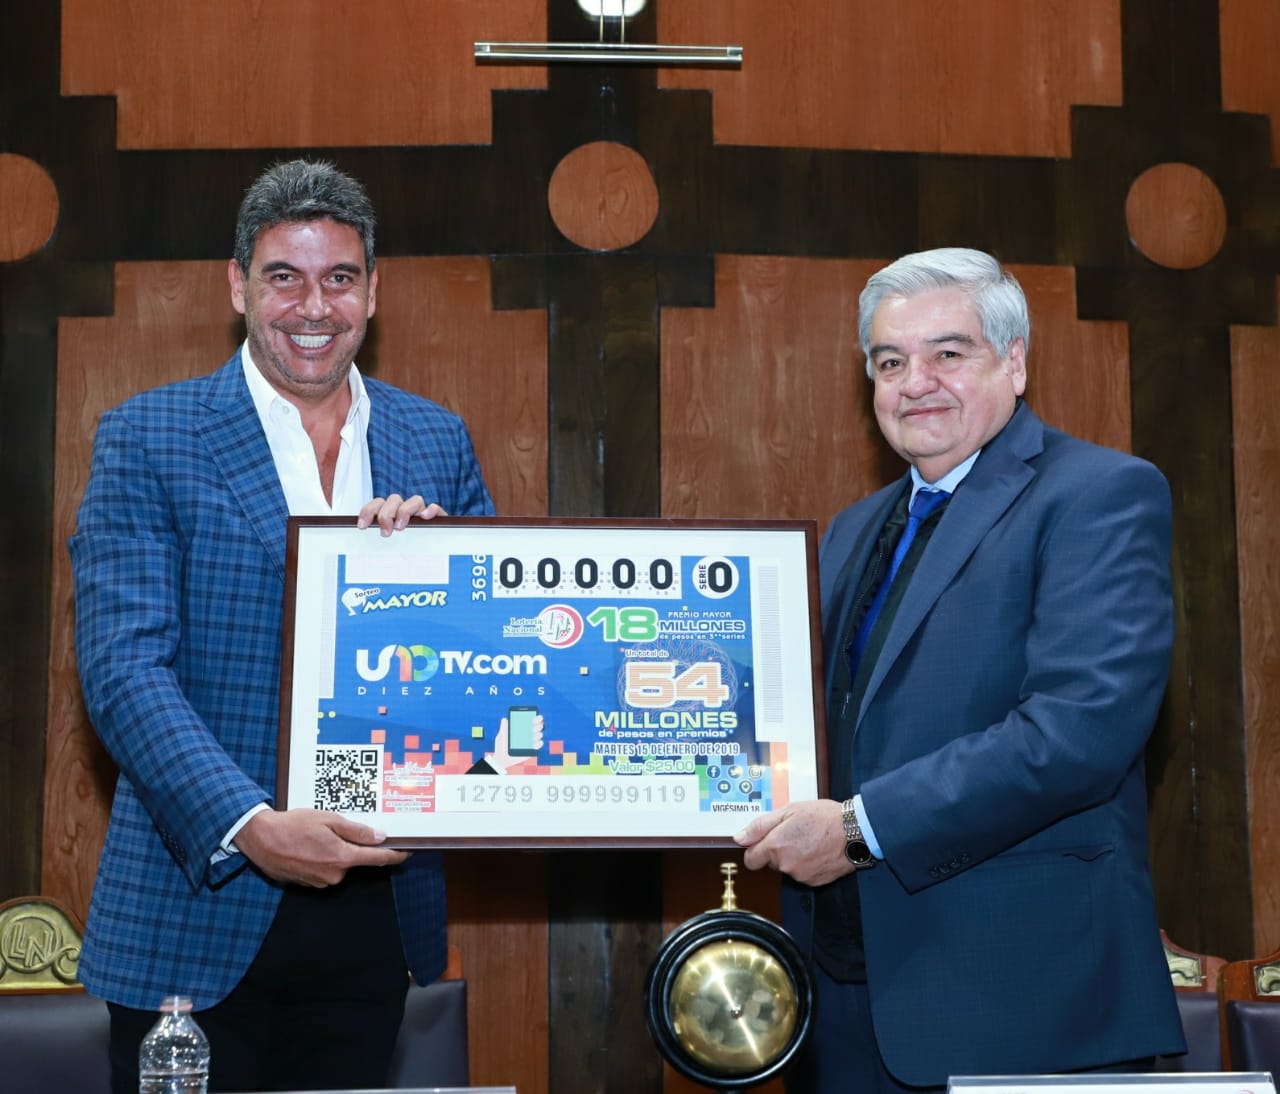 La Lotería Nacional para la Asistencia Pública (LOTENAL) dedicó su Sorteo Mayor No. 3696 al 10° Aniversario de UNOTV